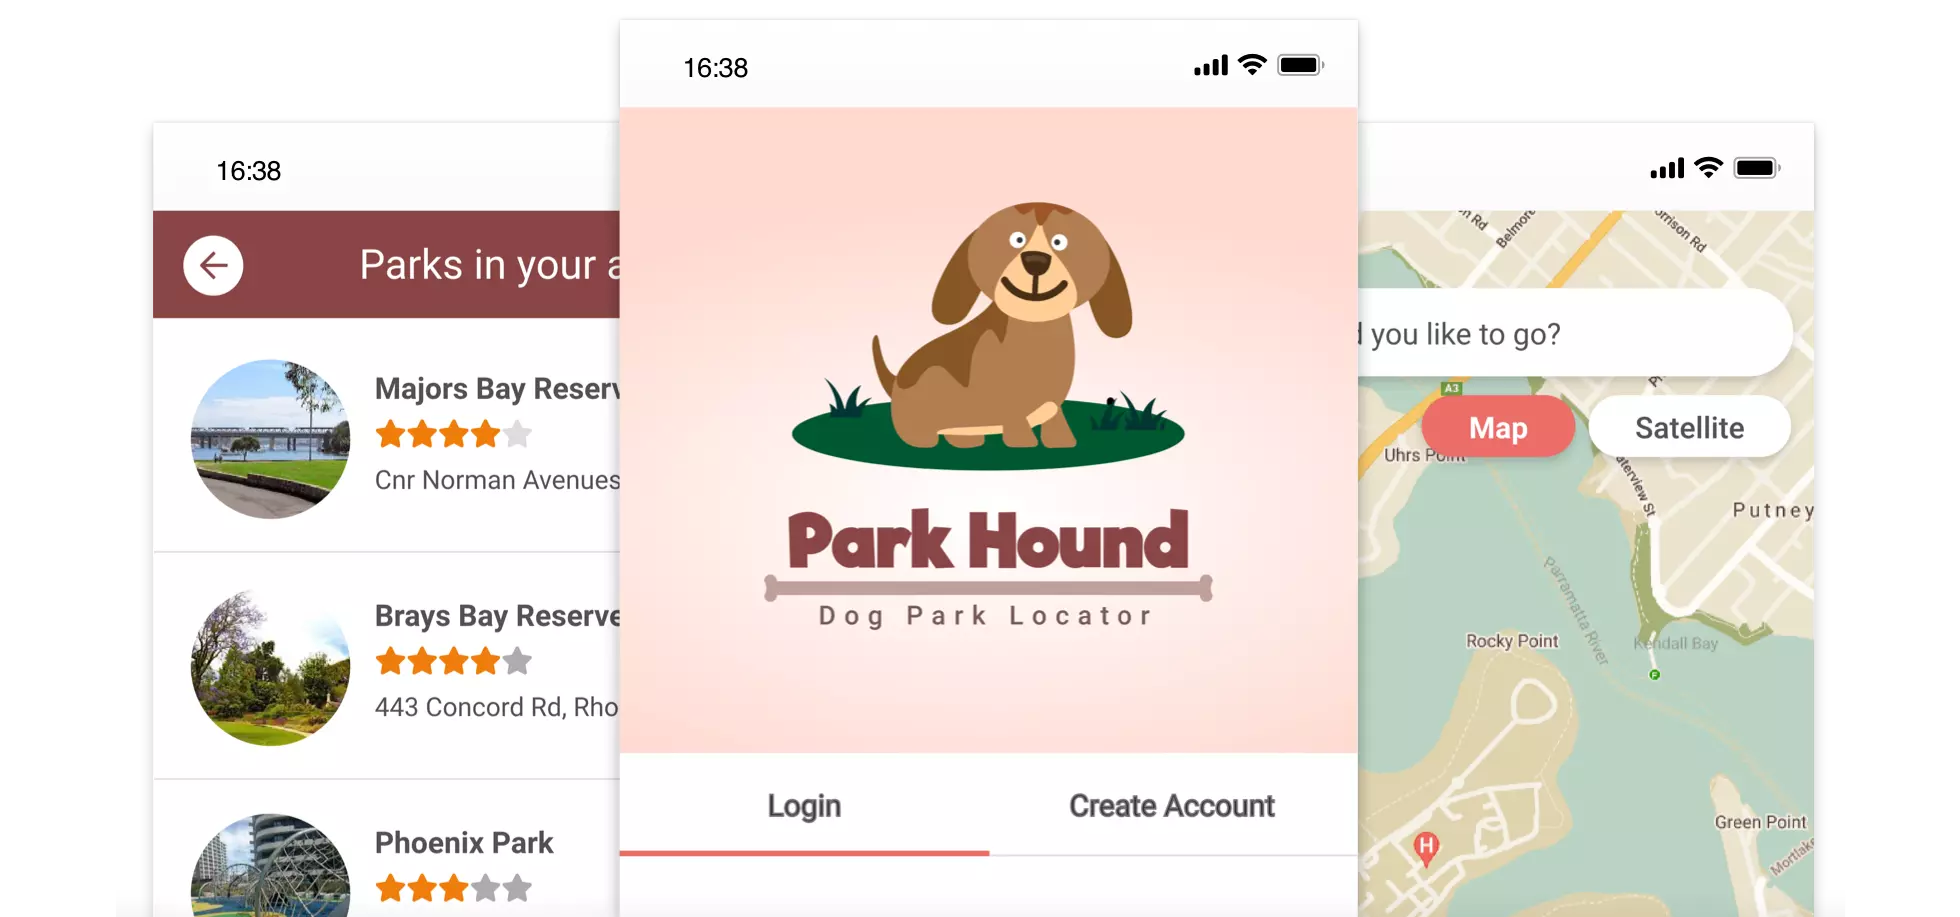 Park Hound - Dog park locator